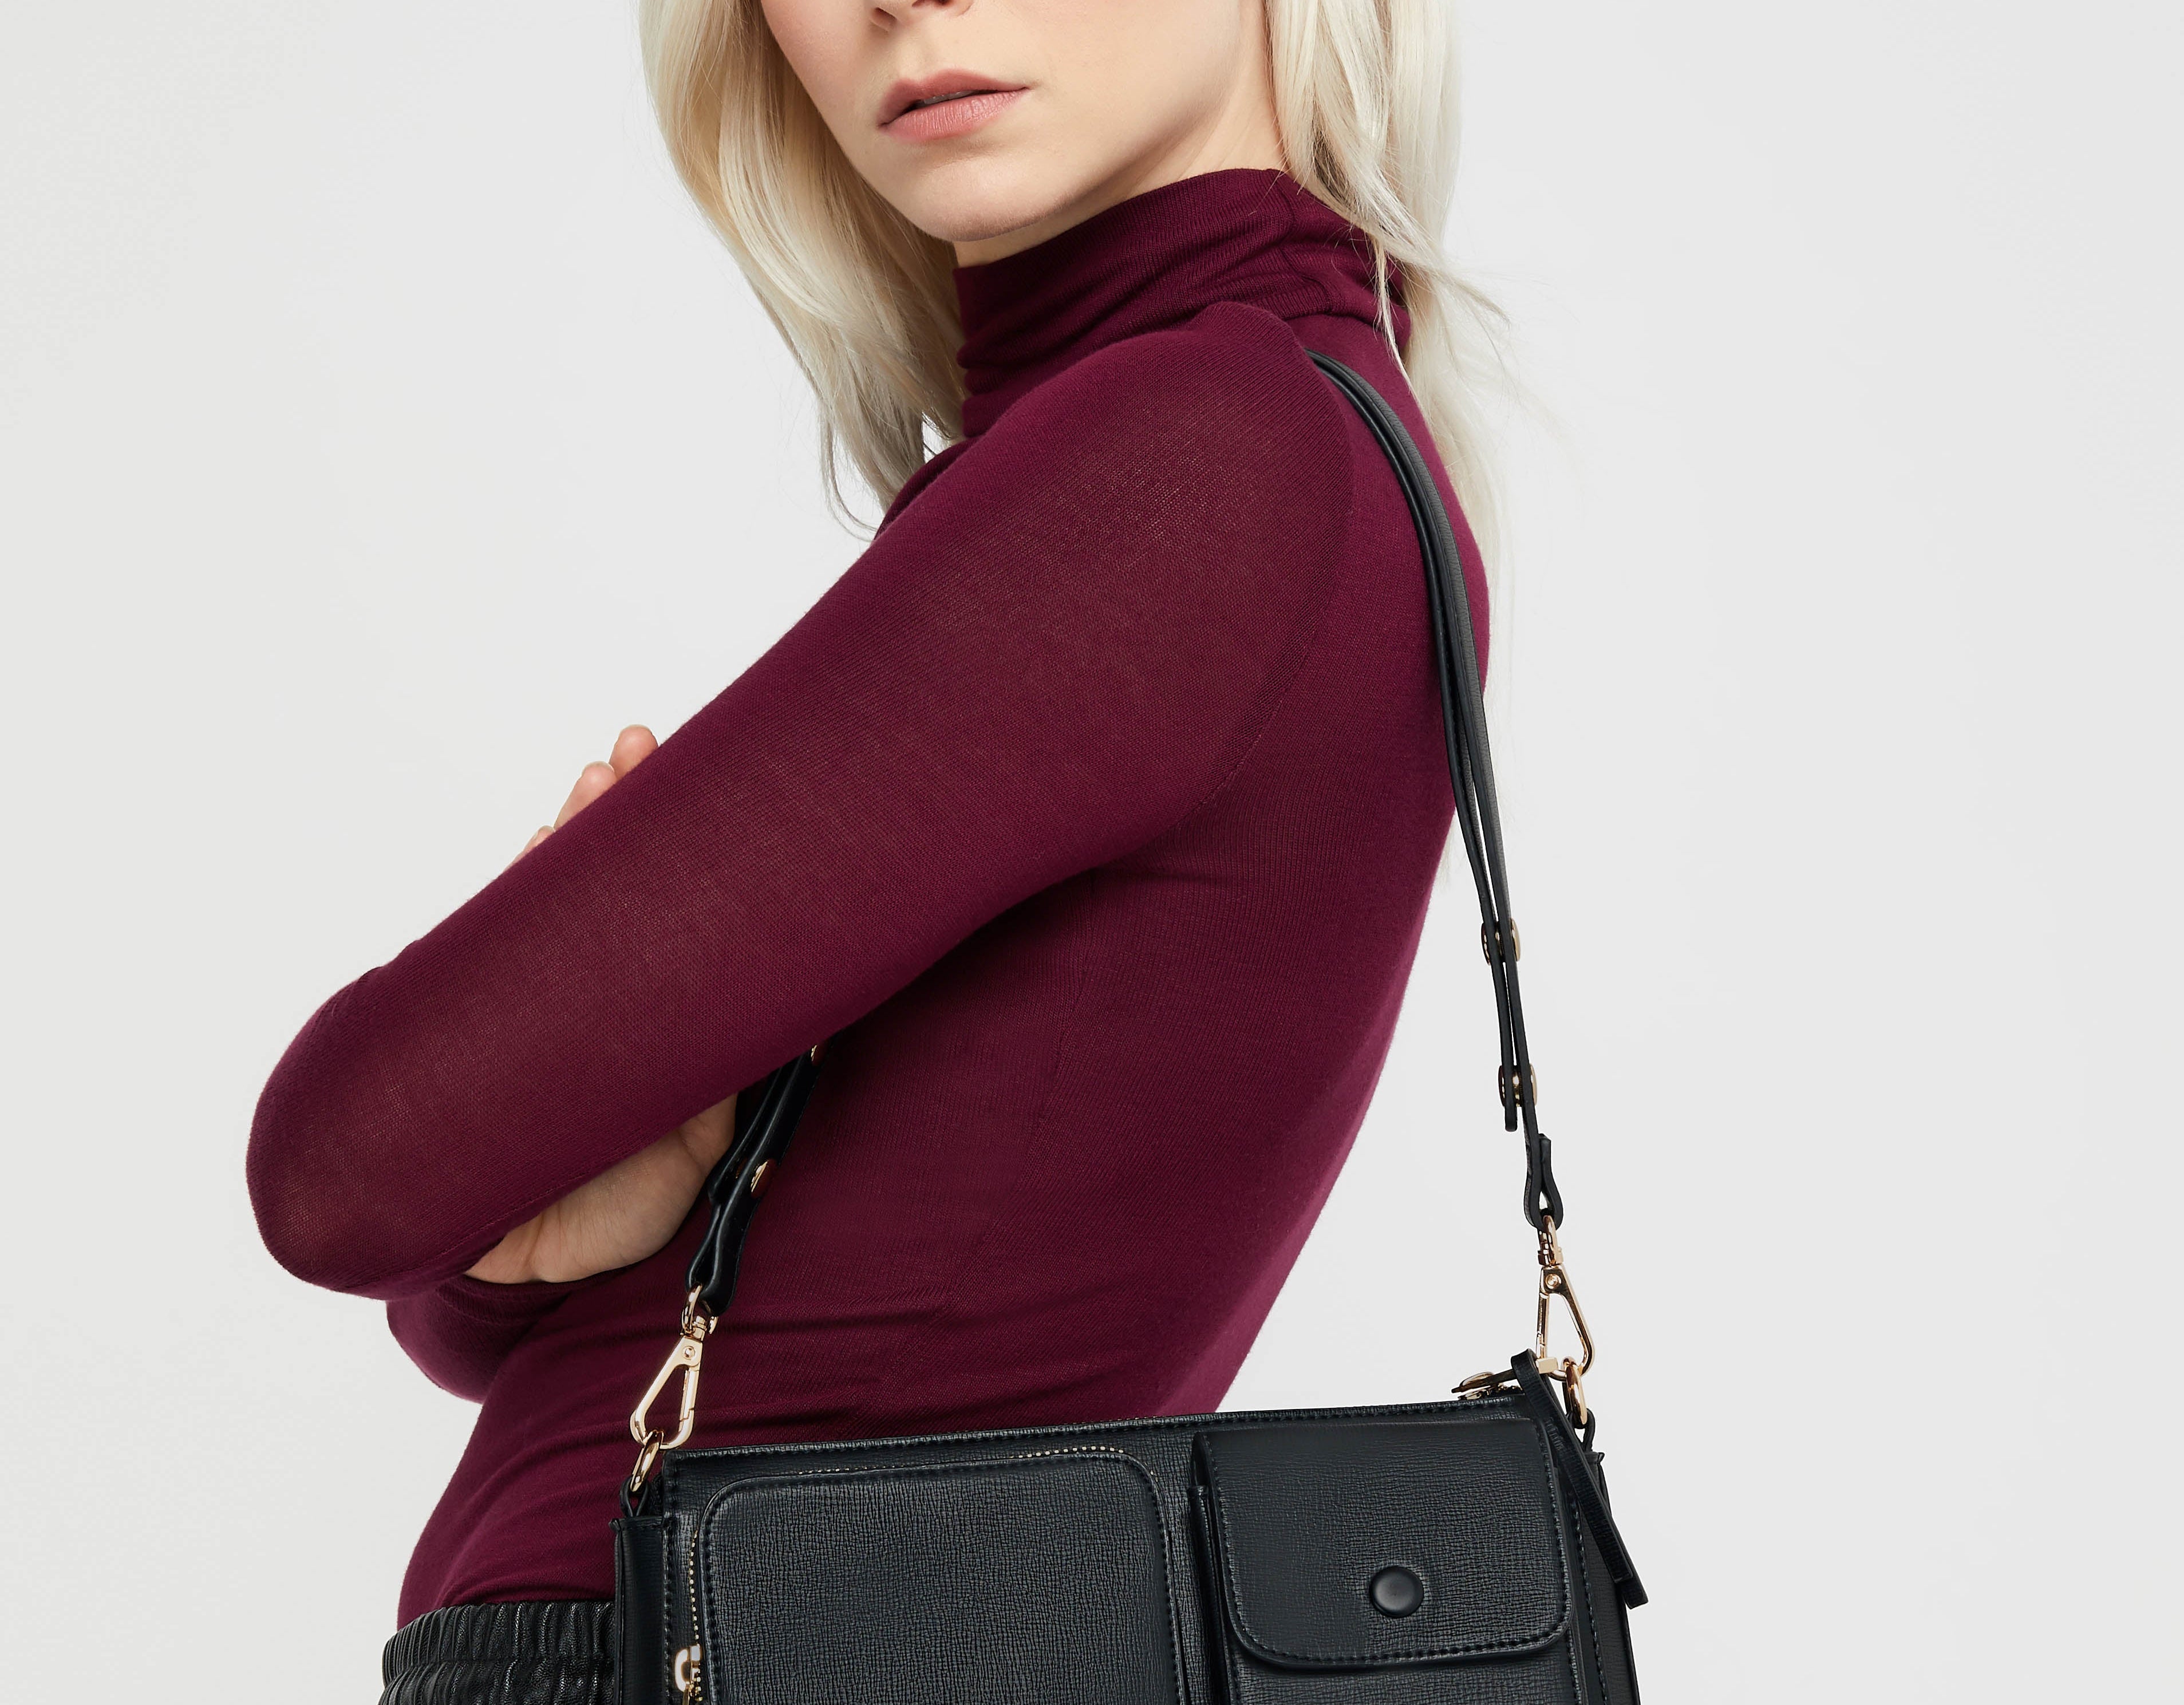 Accessorize London Women's Utility Multi Pocket Adjustable Shoulder Sling Bag